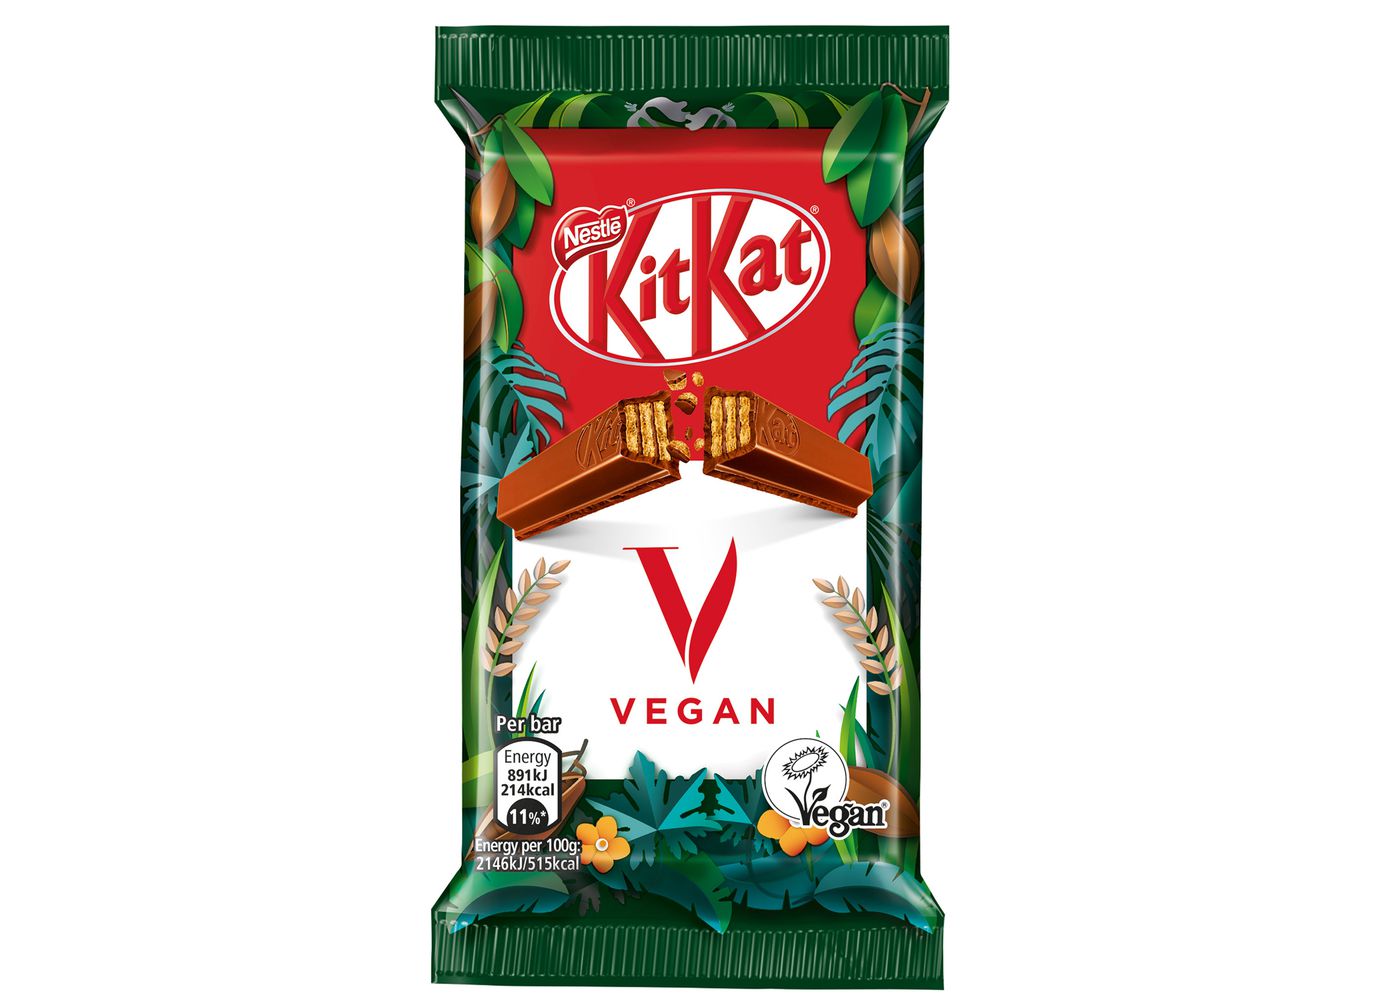 Vegan KitKat Bars Are Hitting Shelves Soon